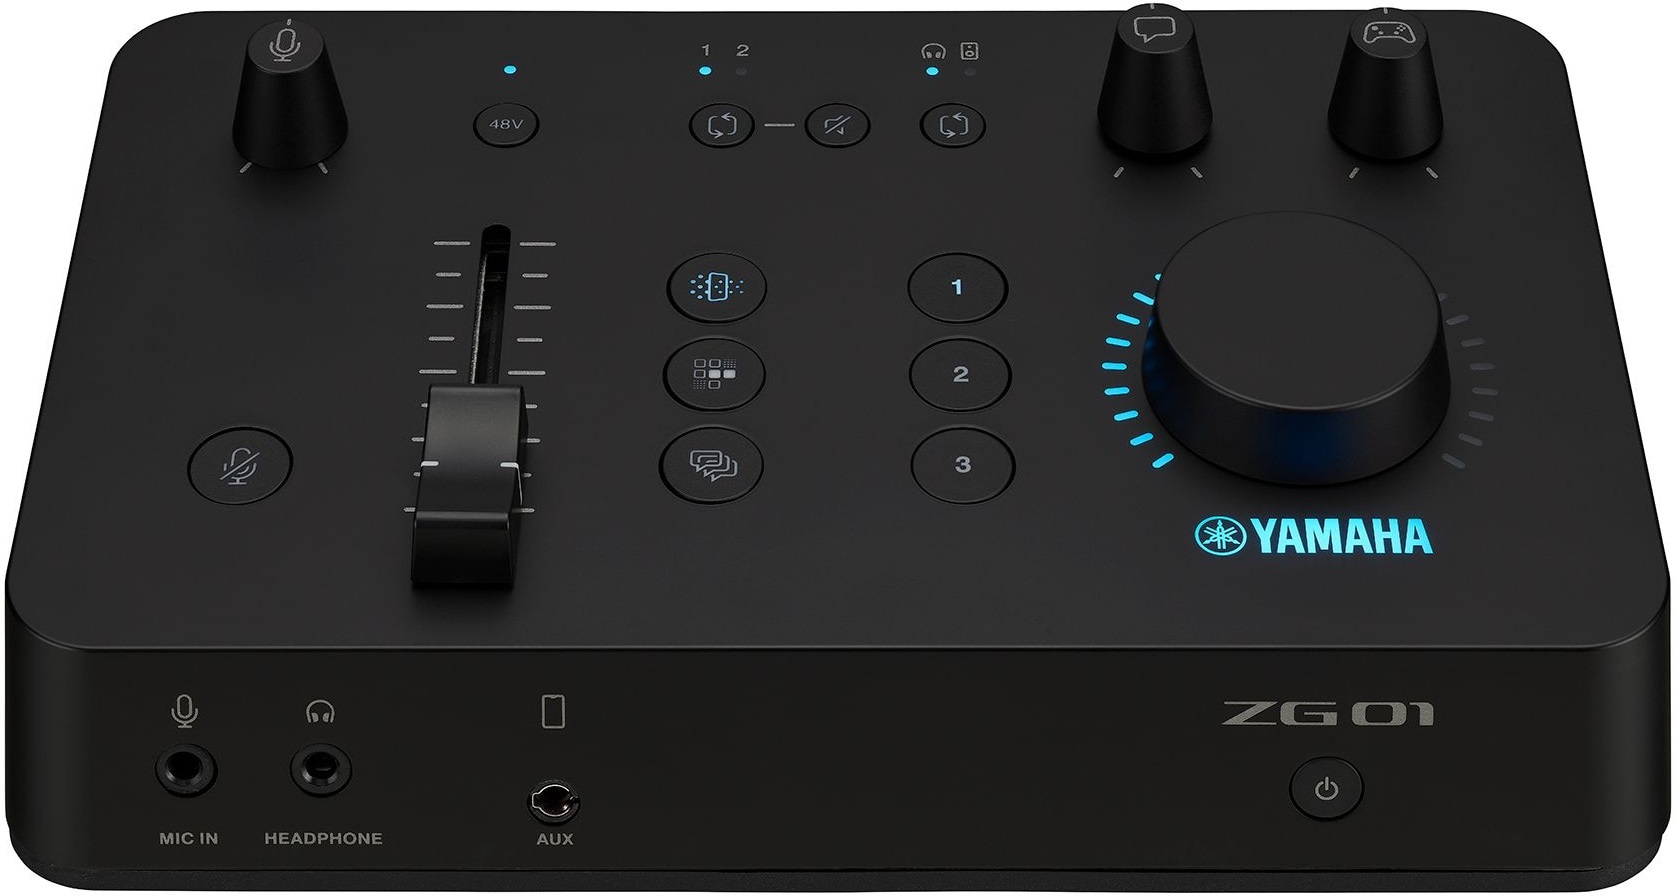 Yamaha ZG01 Gaming Mixer for Voice Chat and Game Streaming | Hi-Fi